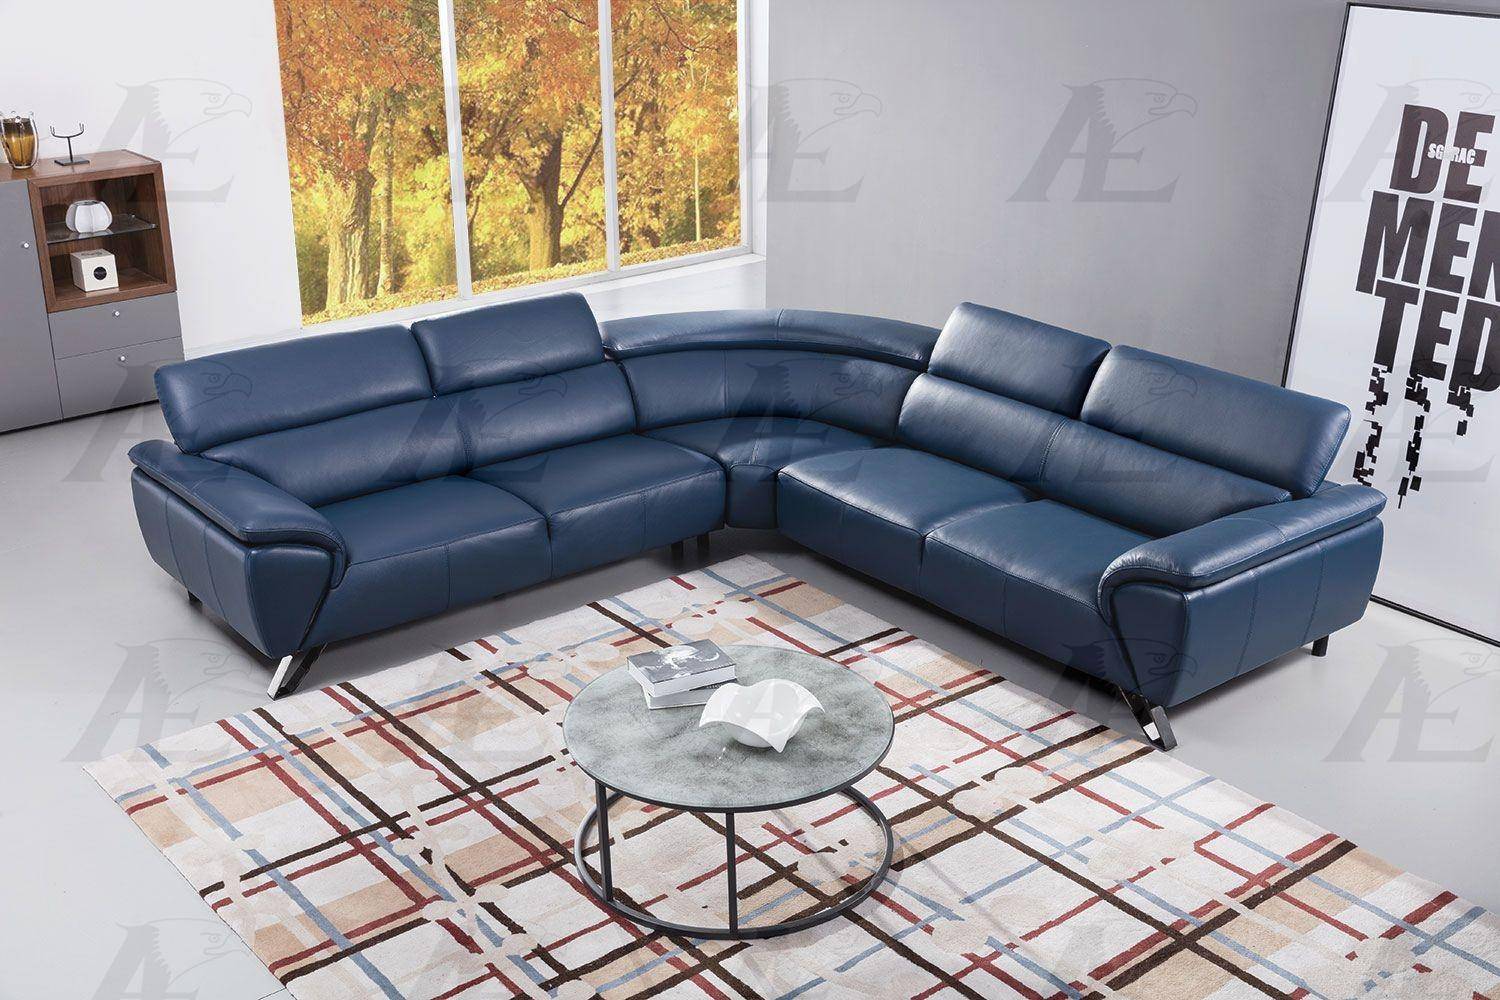 American Eagle Ek L8002m Nb, Navy Blue Leather Living Room Furniture